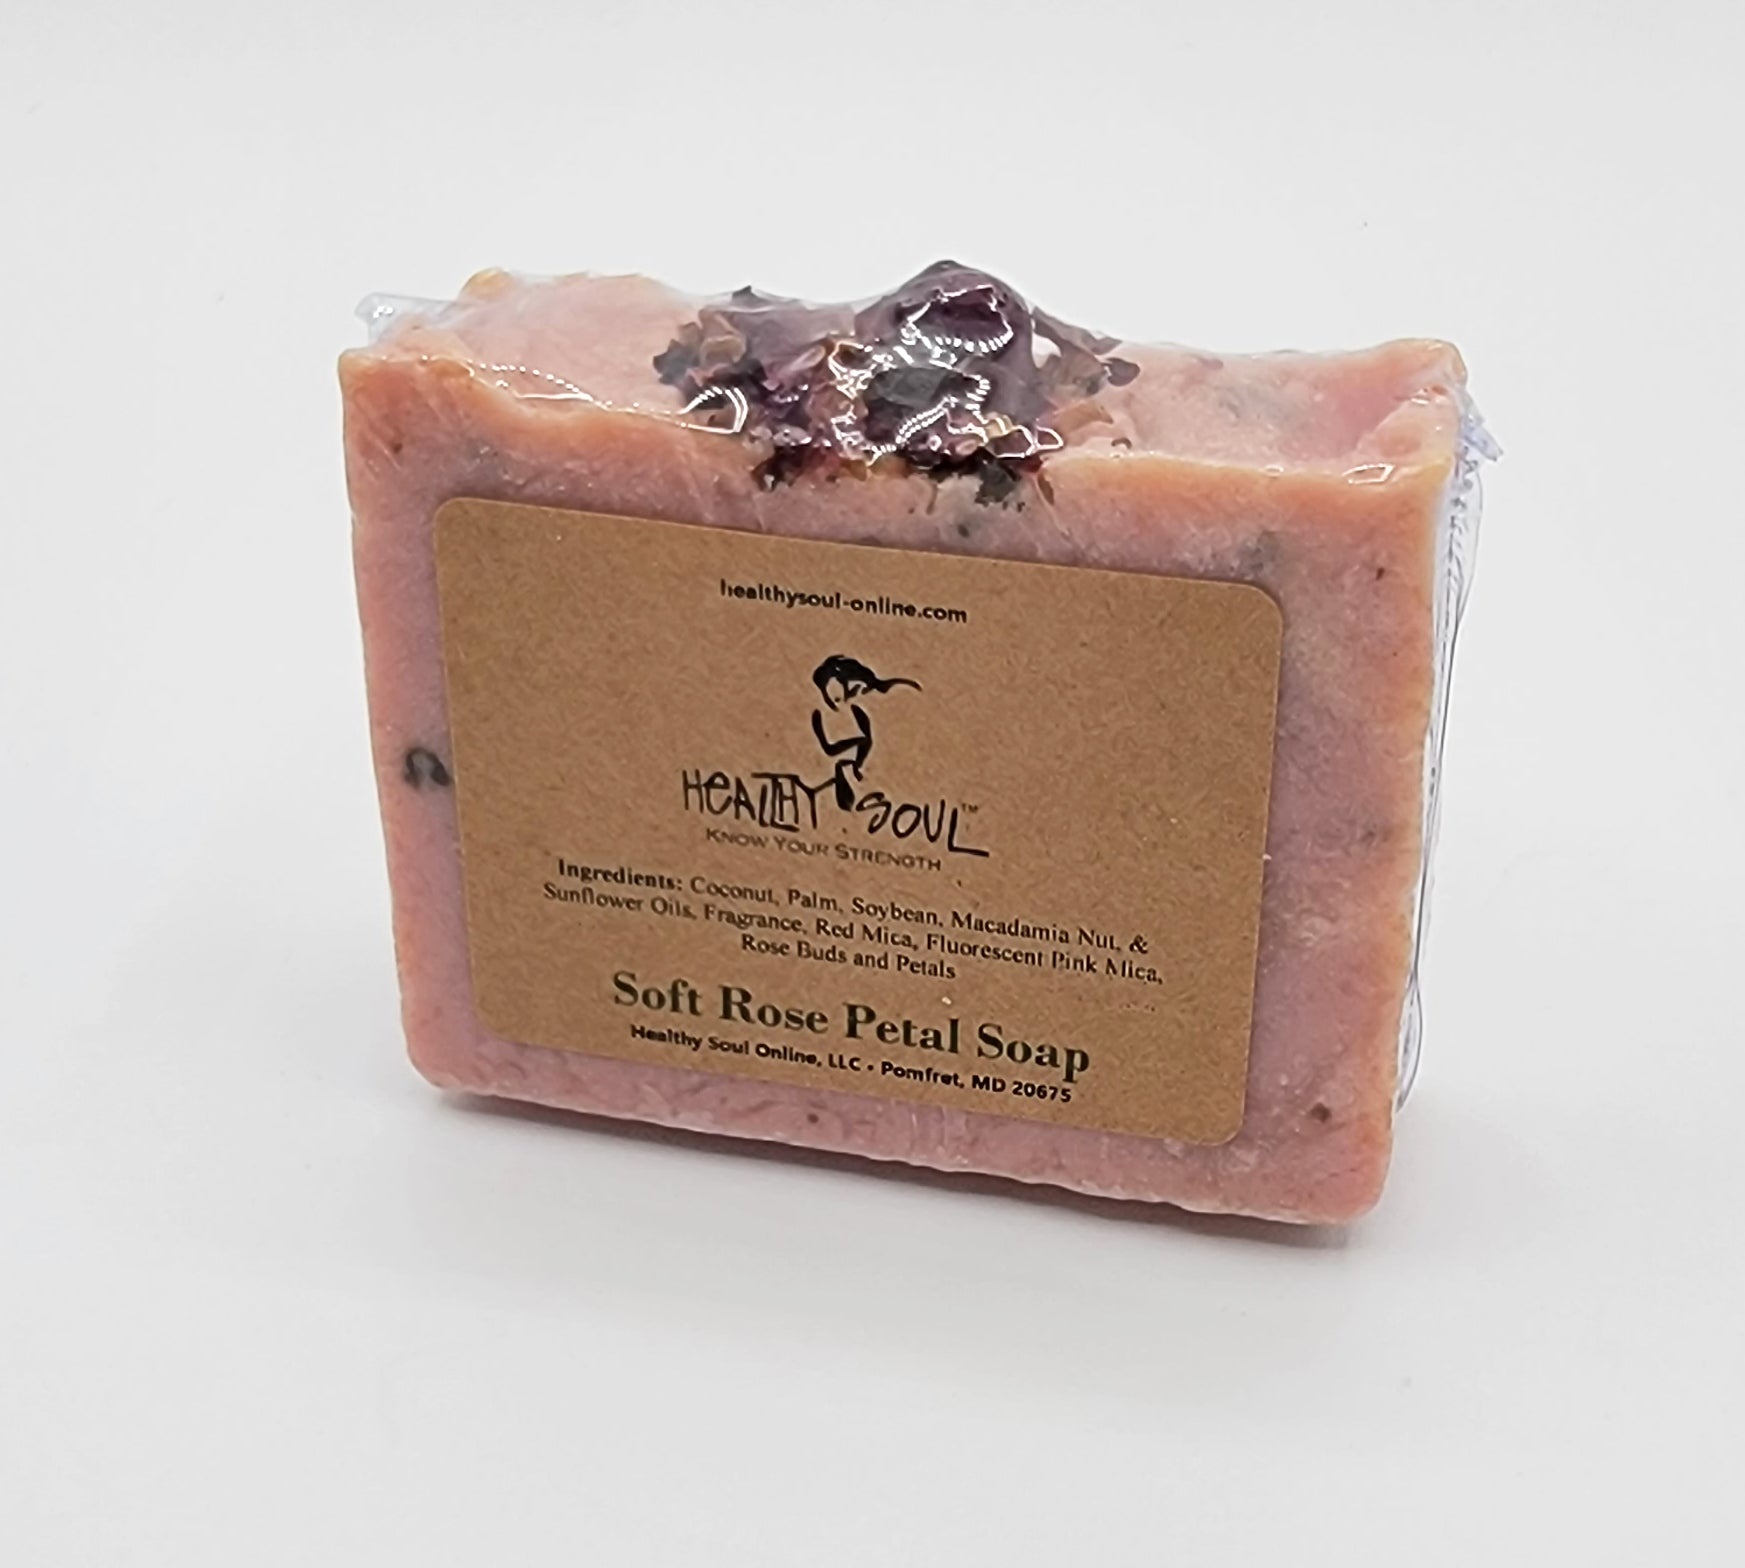 SOAP - Healthy Soul Farmers Market Soaps